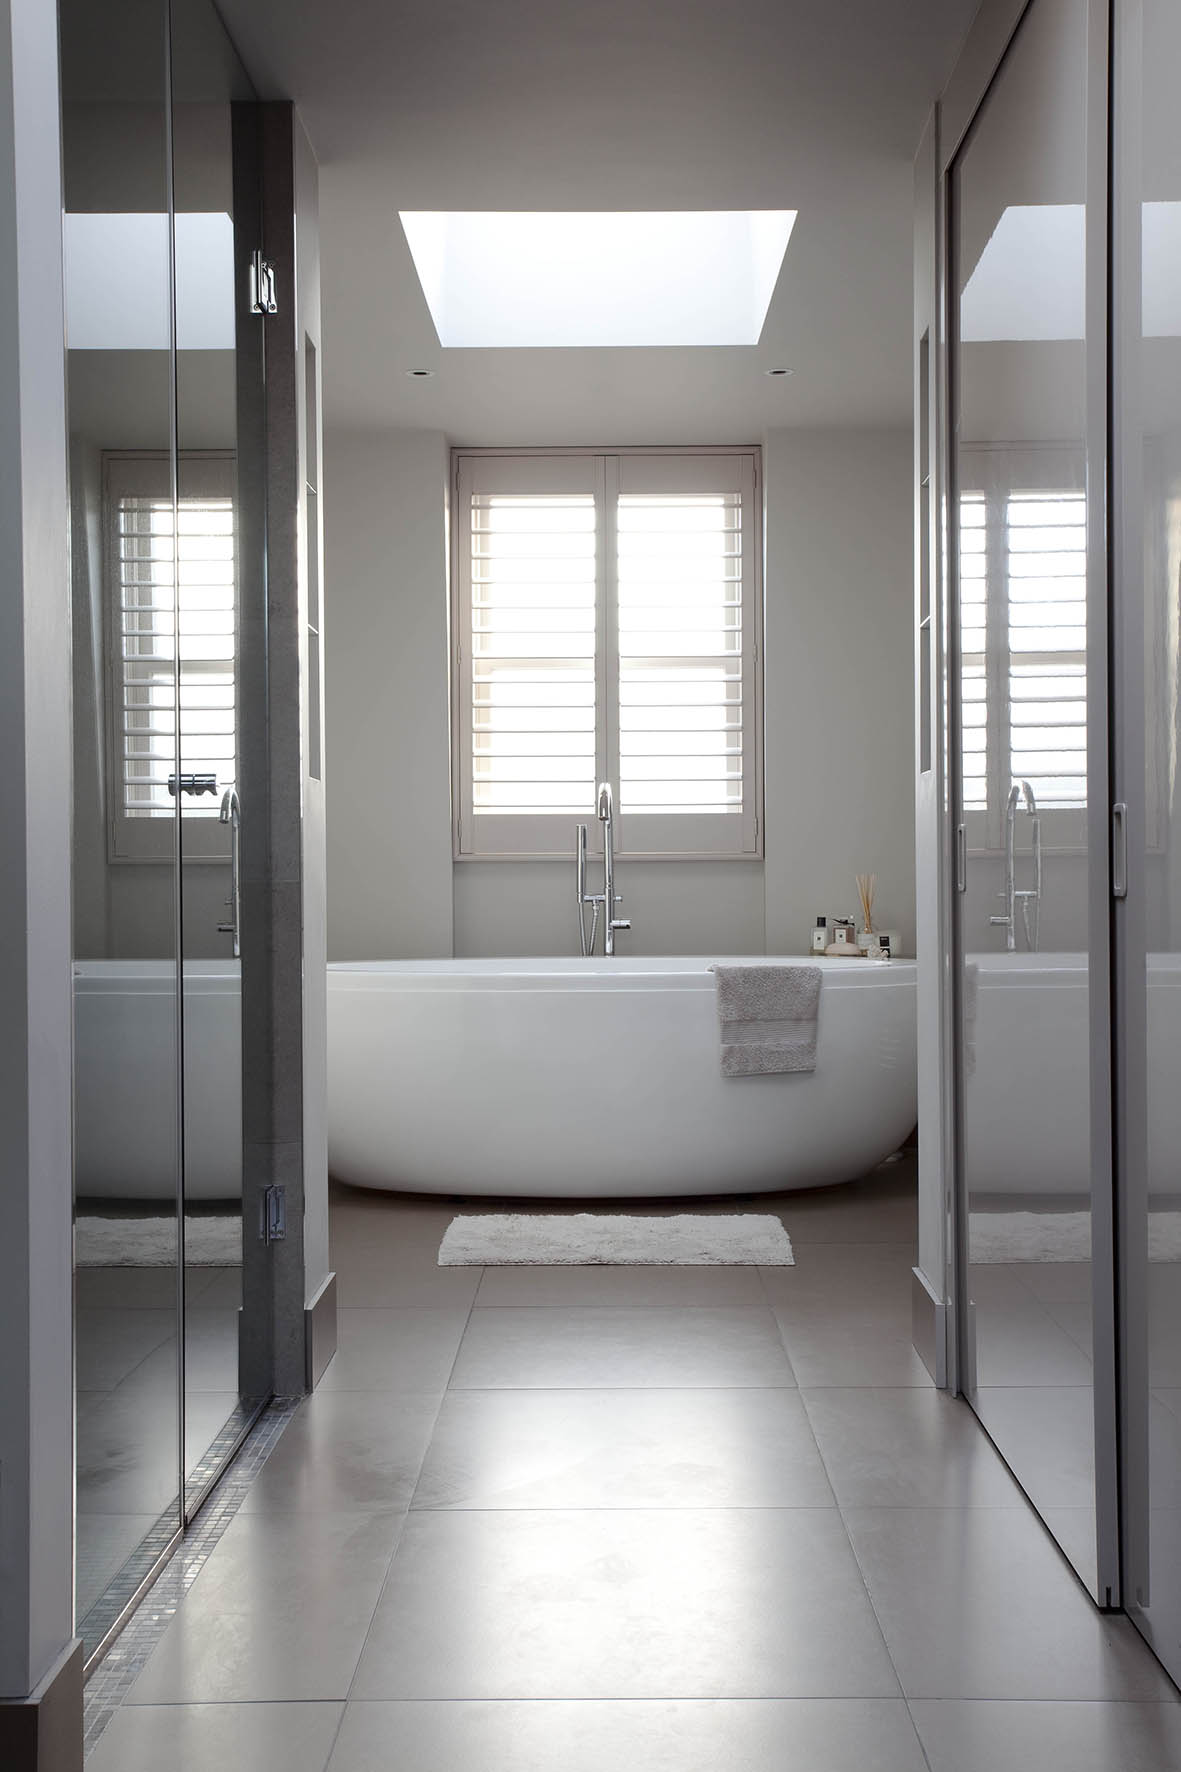 London interior designer creates luxury bathroom